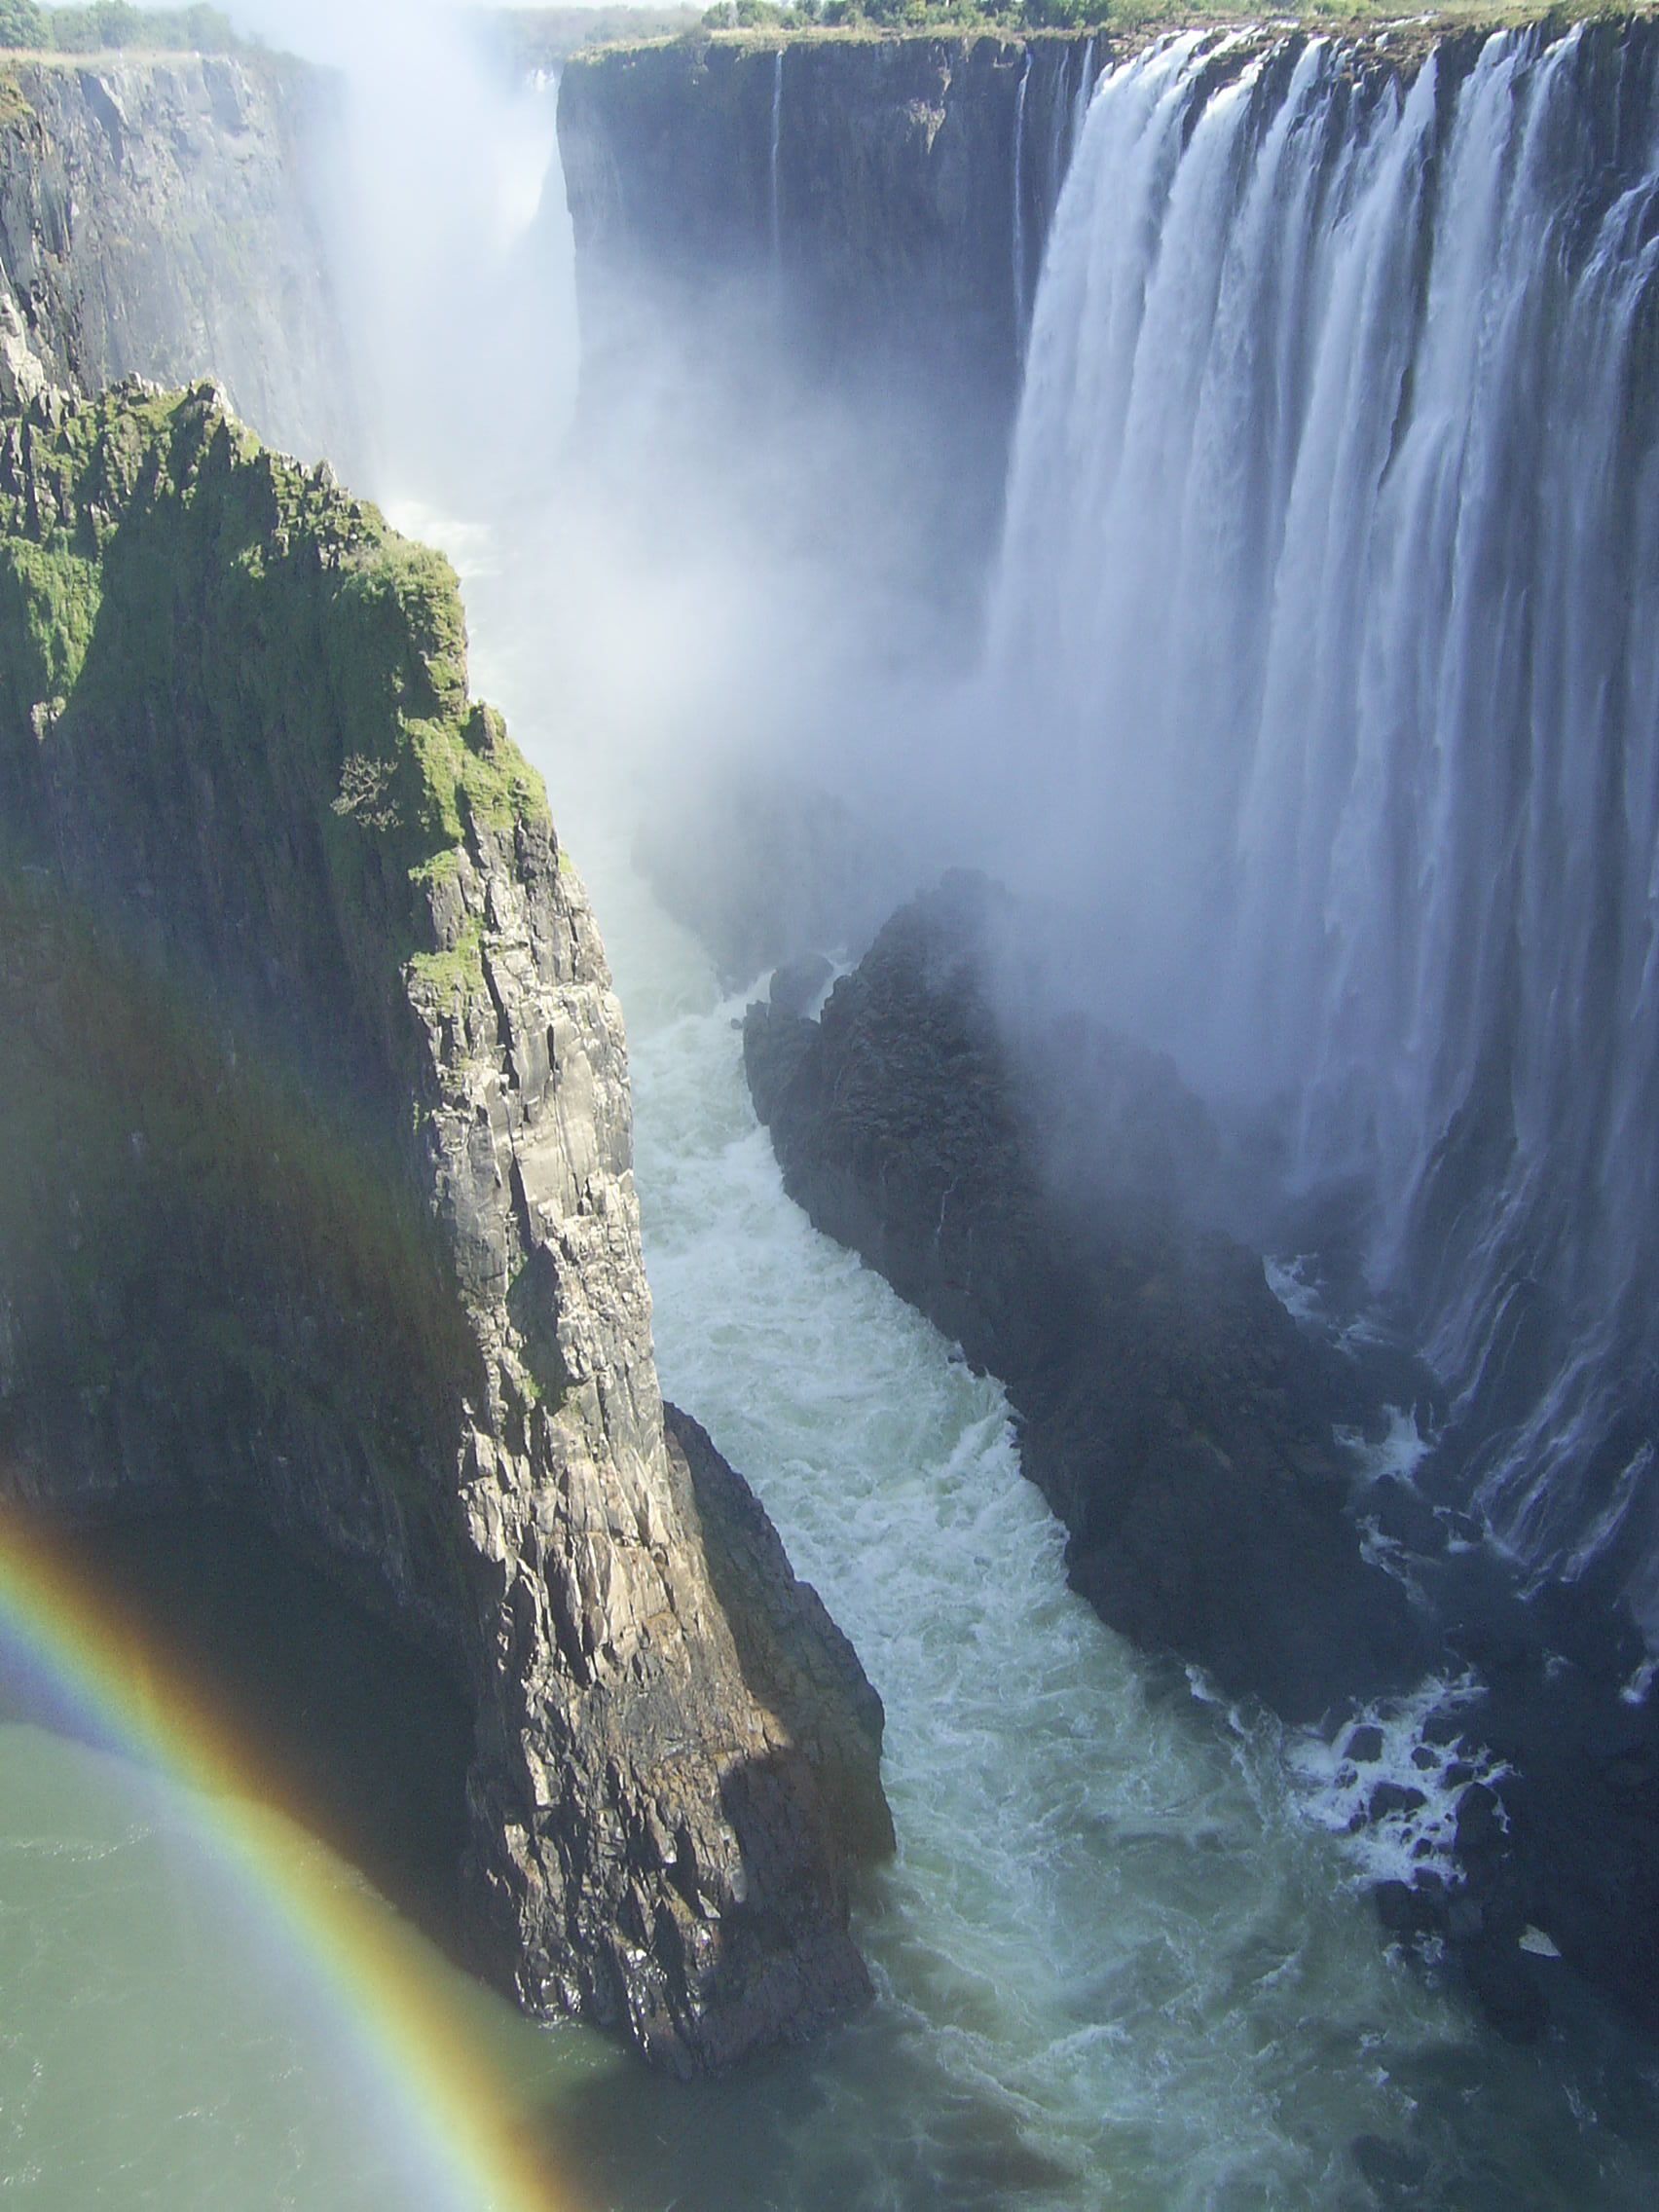 Les chutes Victoria, Zambie-Zimbabwe